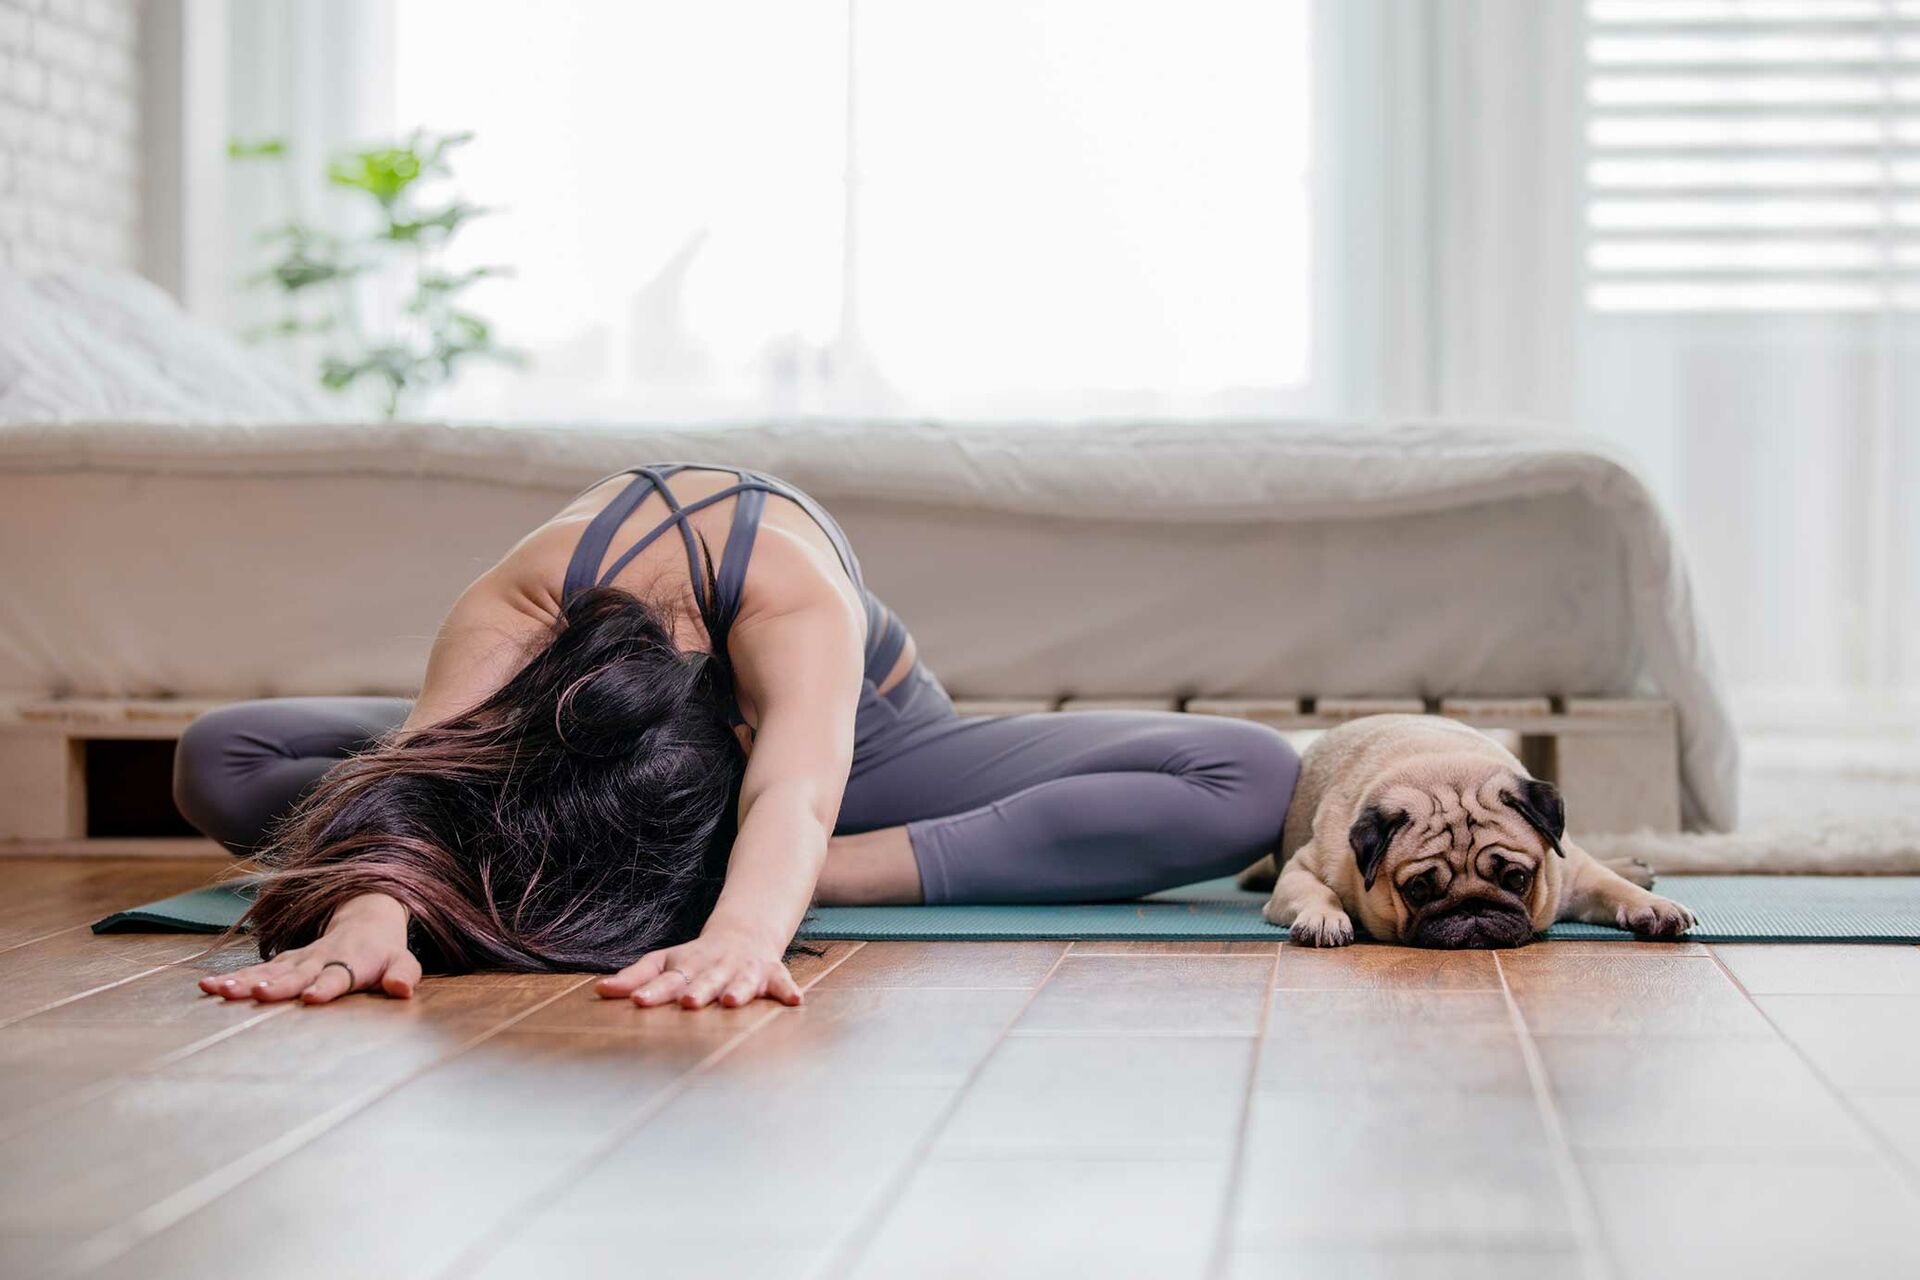  Eine Frau dehnt sich auf einer Yoga-Matte, während ein Mops mit geschlossenen Augen neben ihr liegt. 